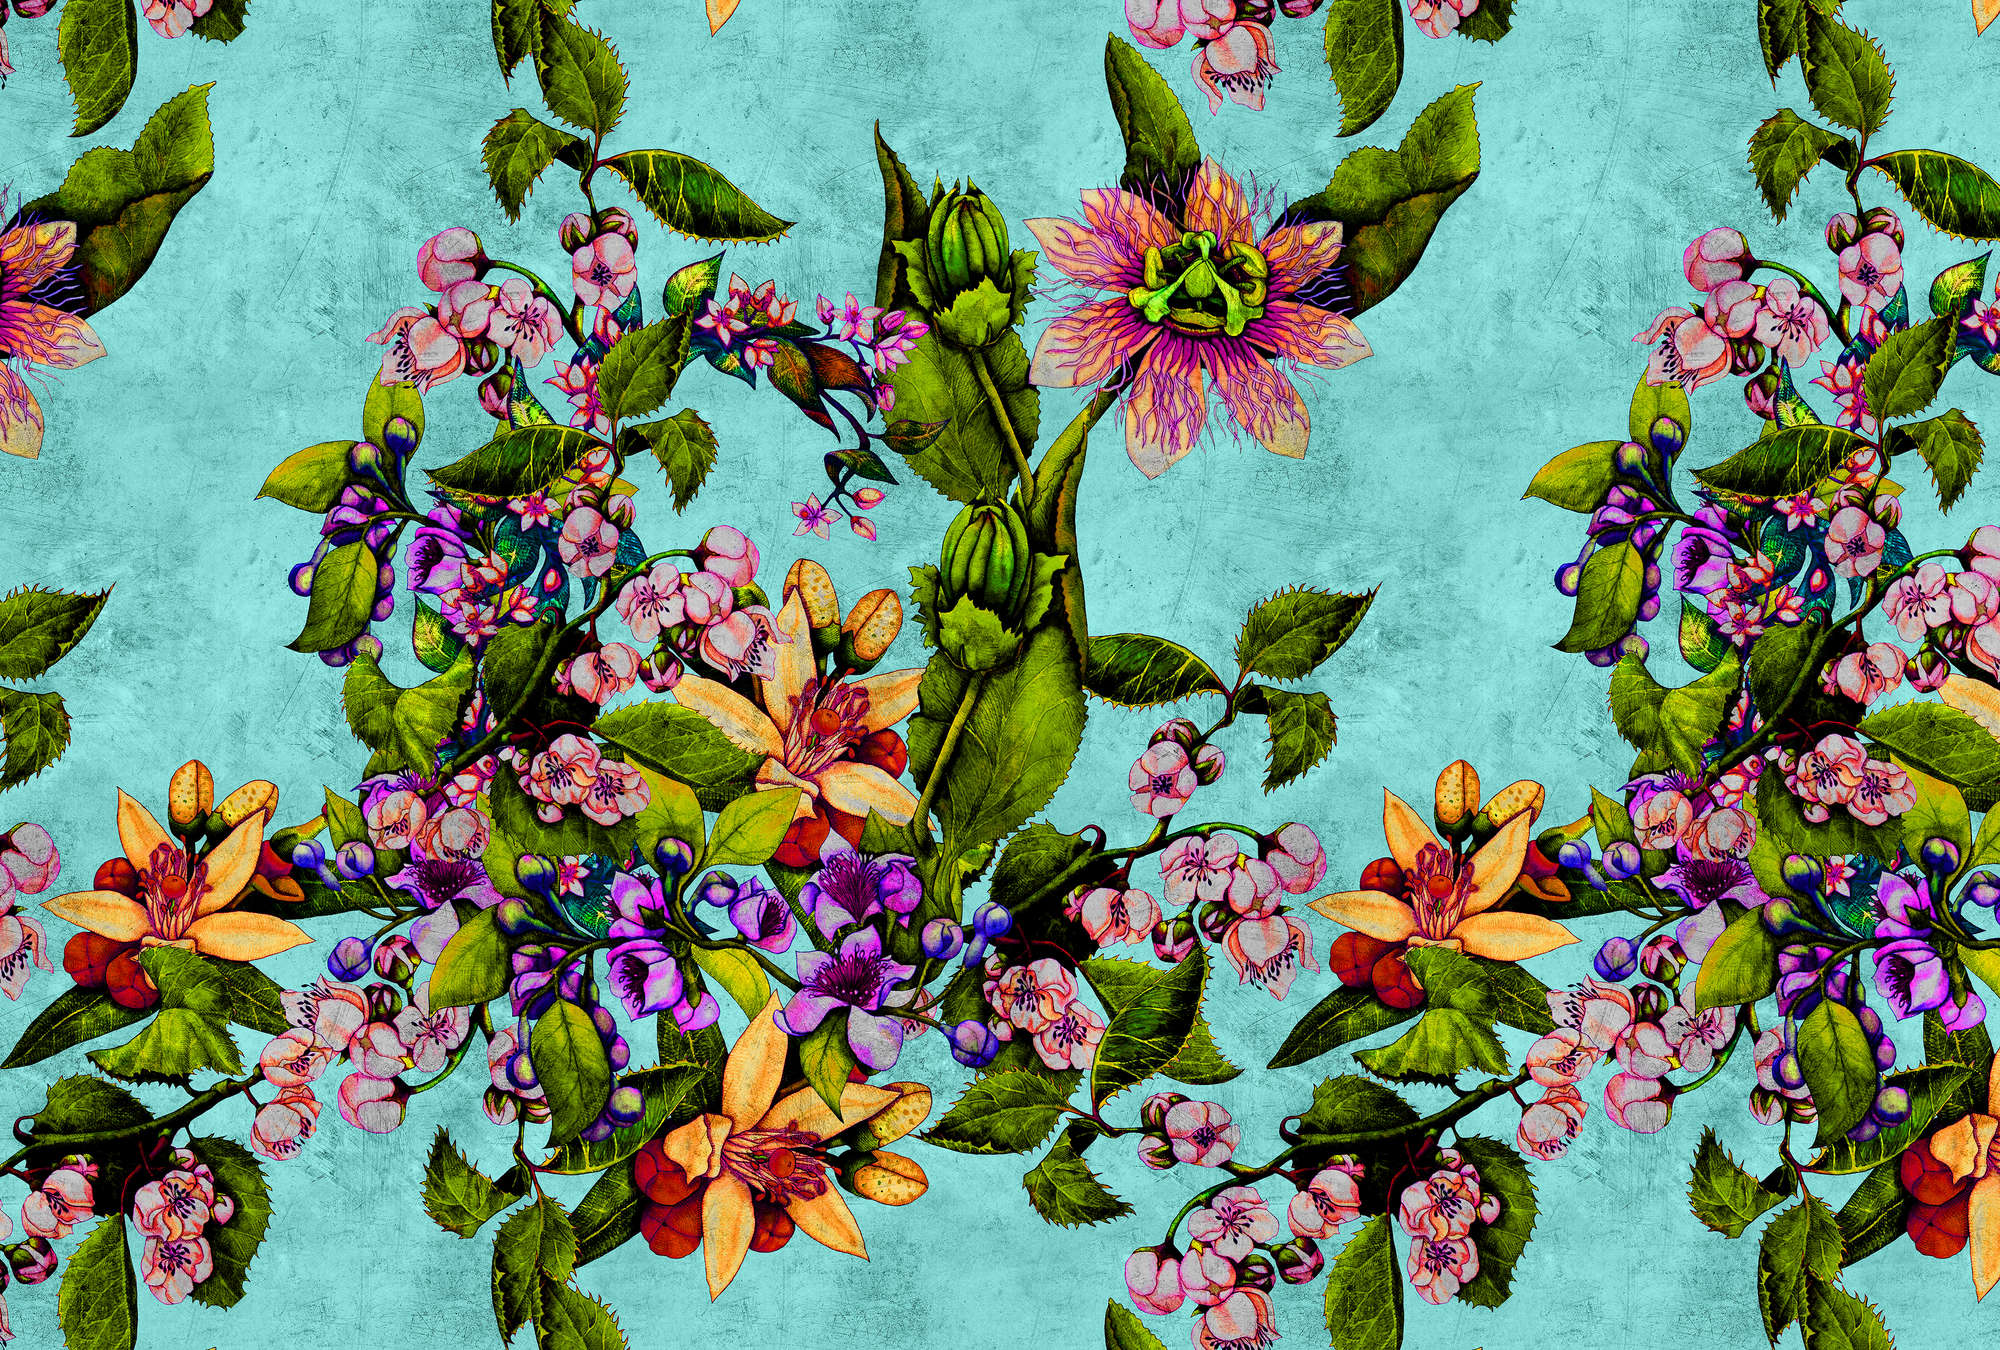             Tropical Passion 1 - Papel pintado fotográfico tropical con motivo floral en textura rasposa - Verde, Turquesa | Premium Smooth Non-woven
        